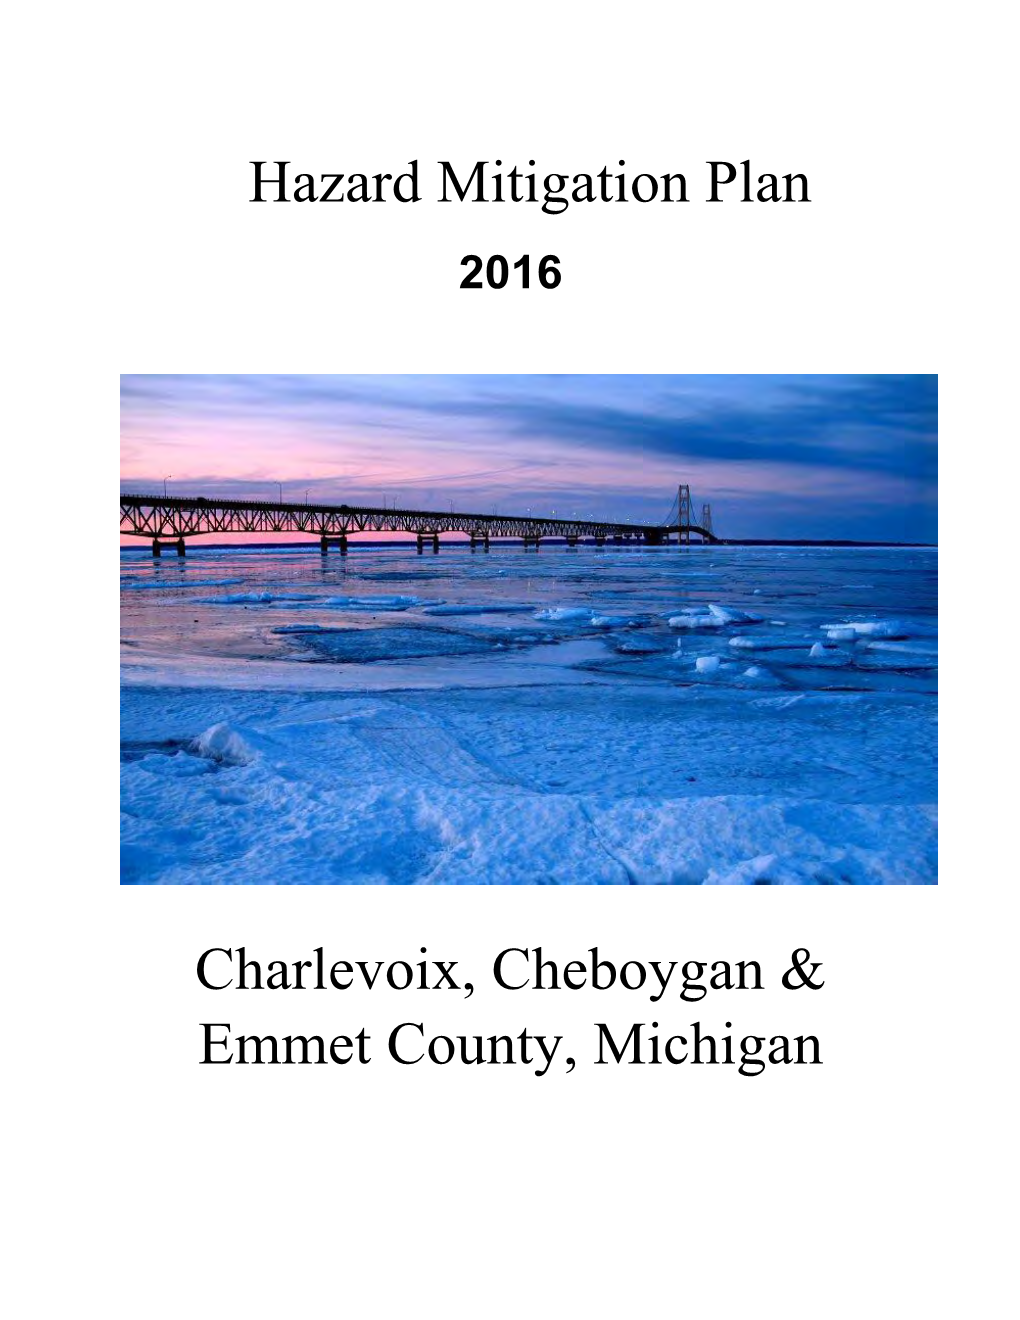 Hazard Mitigation Plan EMMET